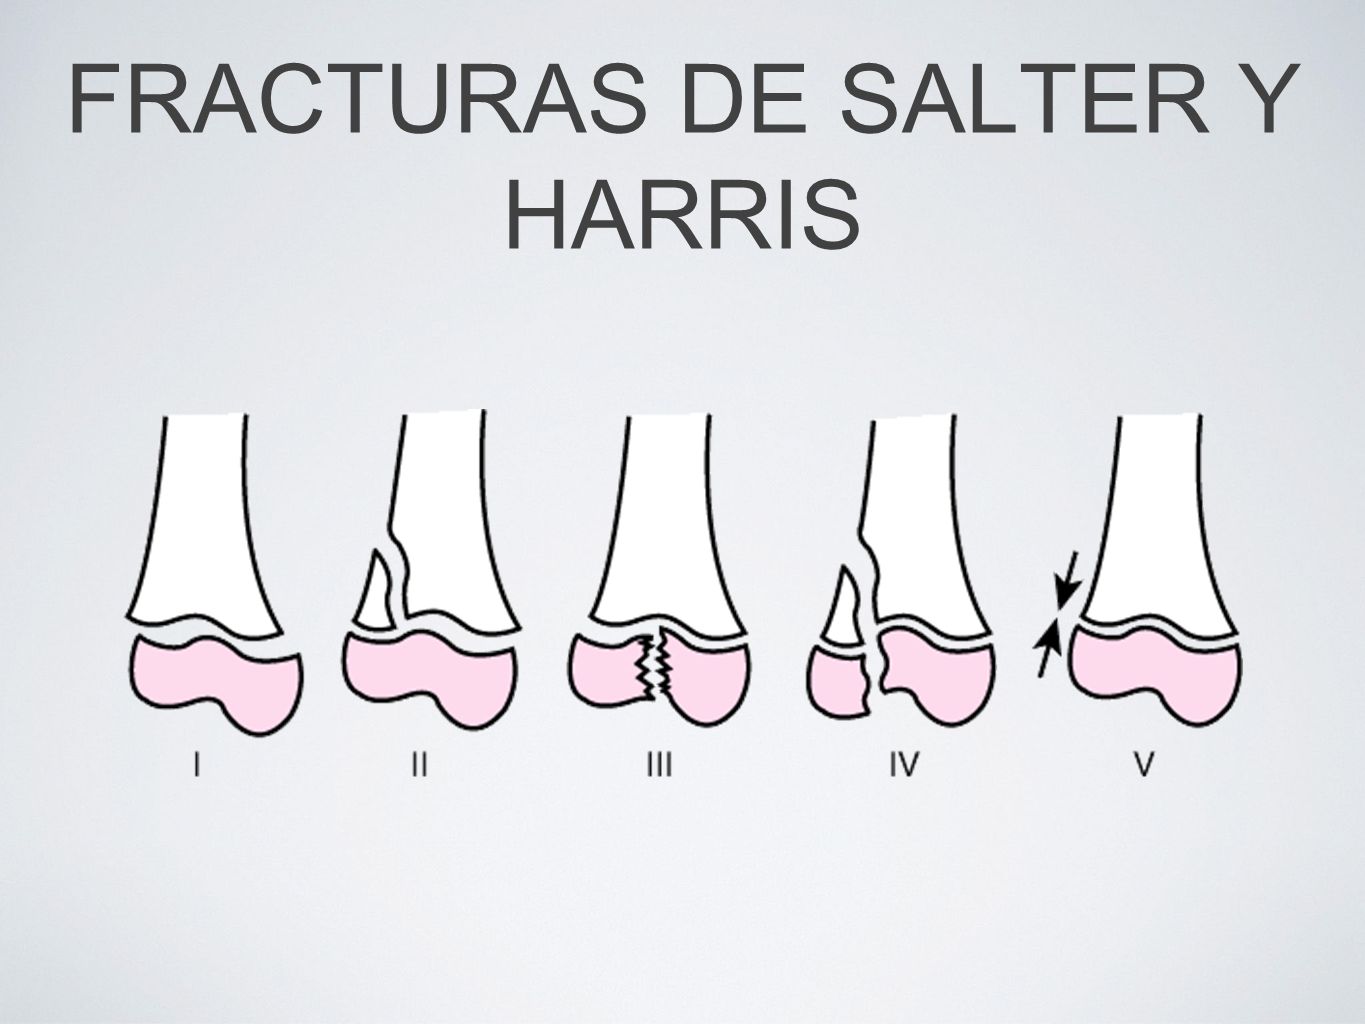 FRACTURAS DE SALTER Y HARRIS